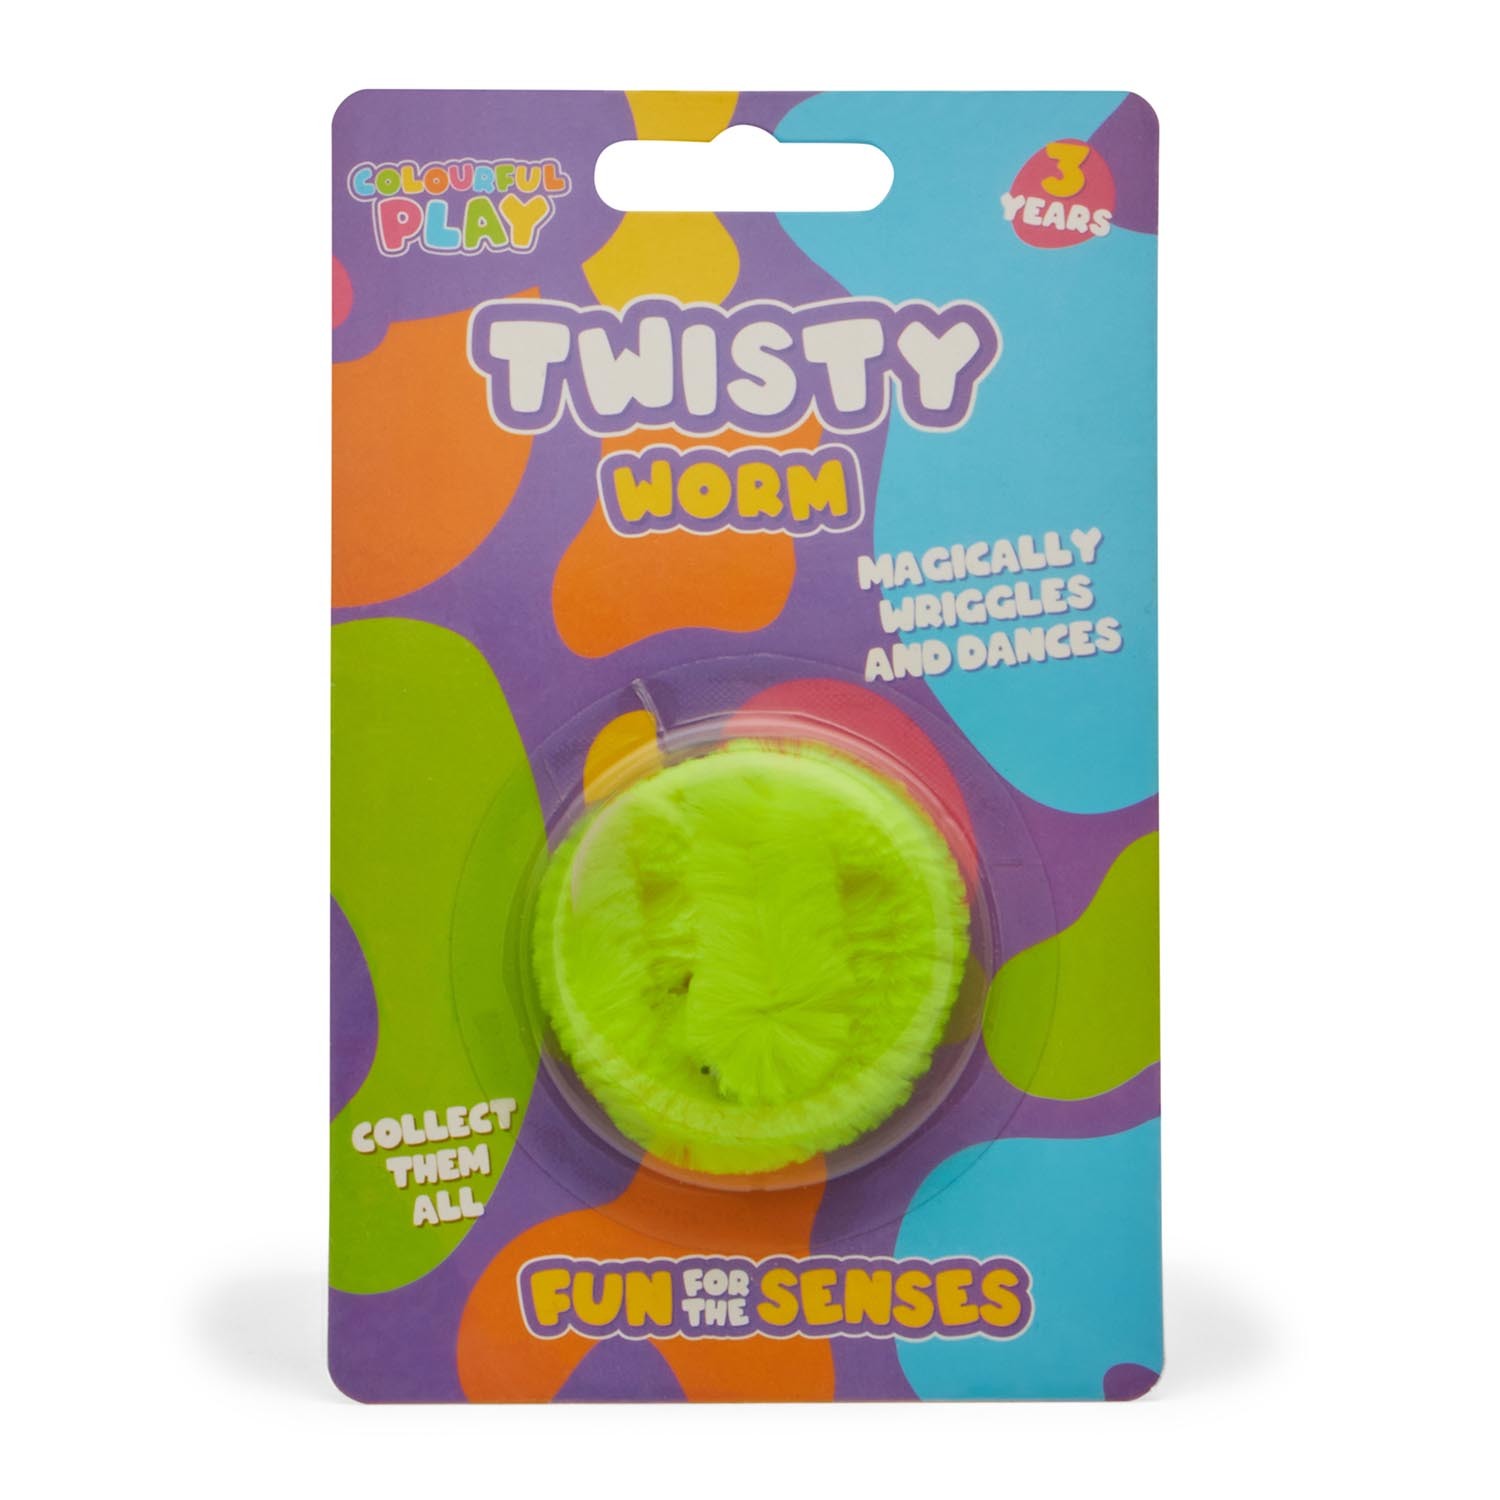 Twisty Worm Image 5